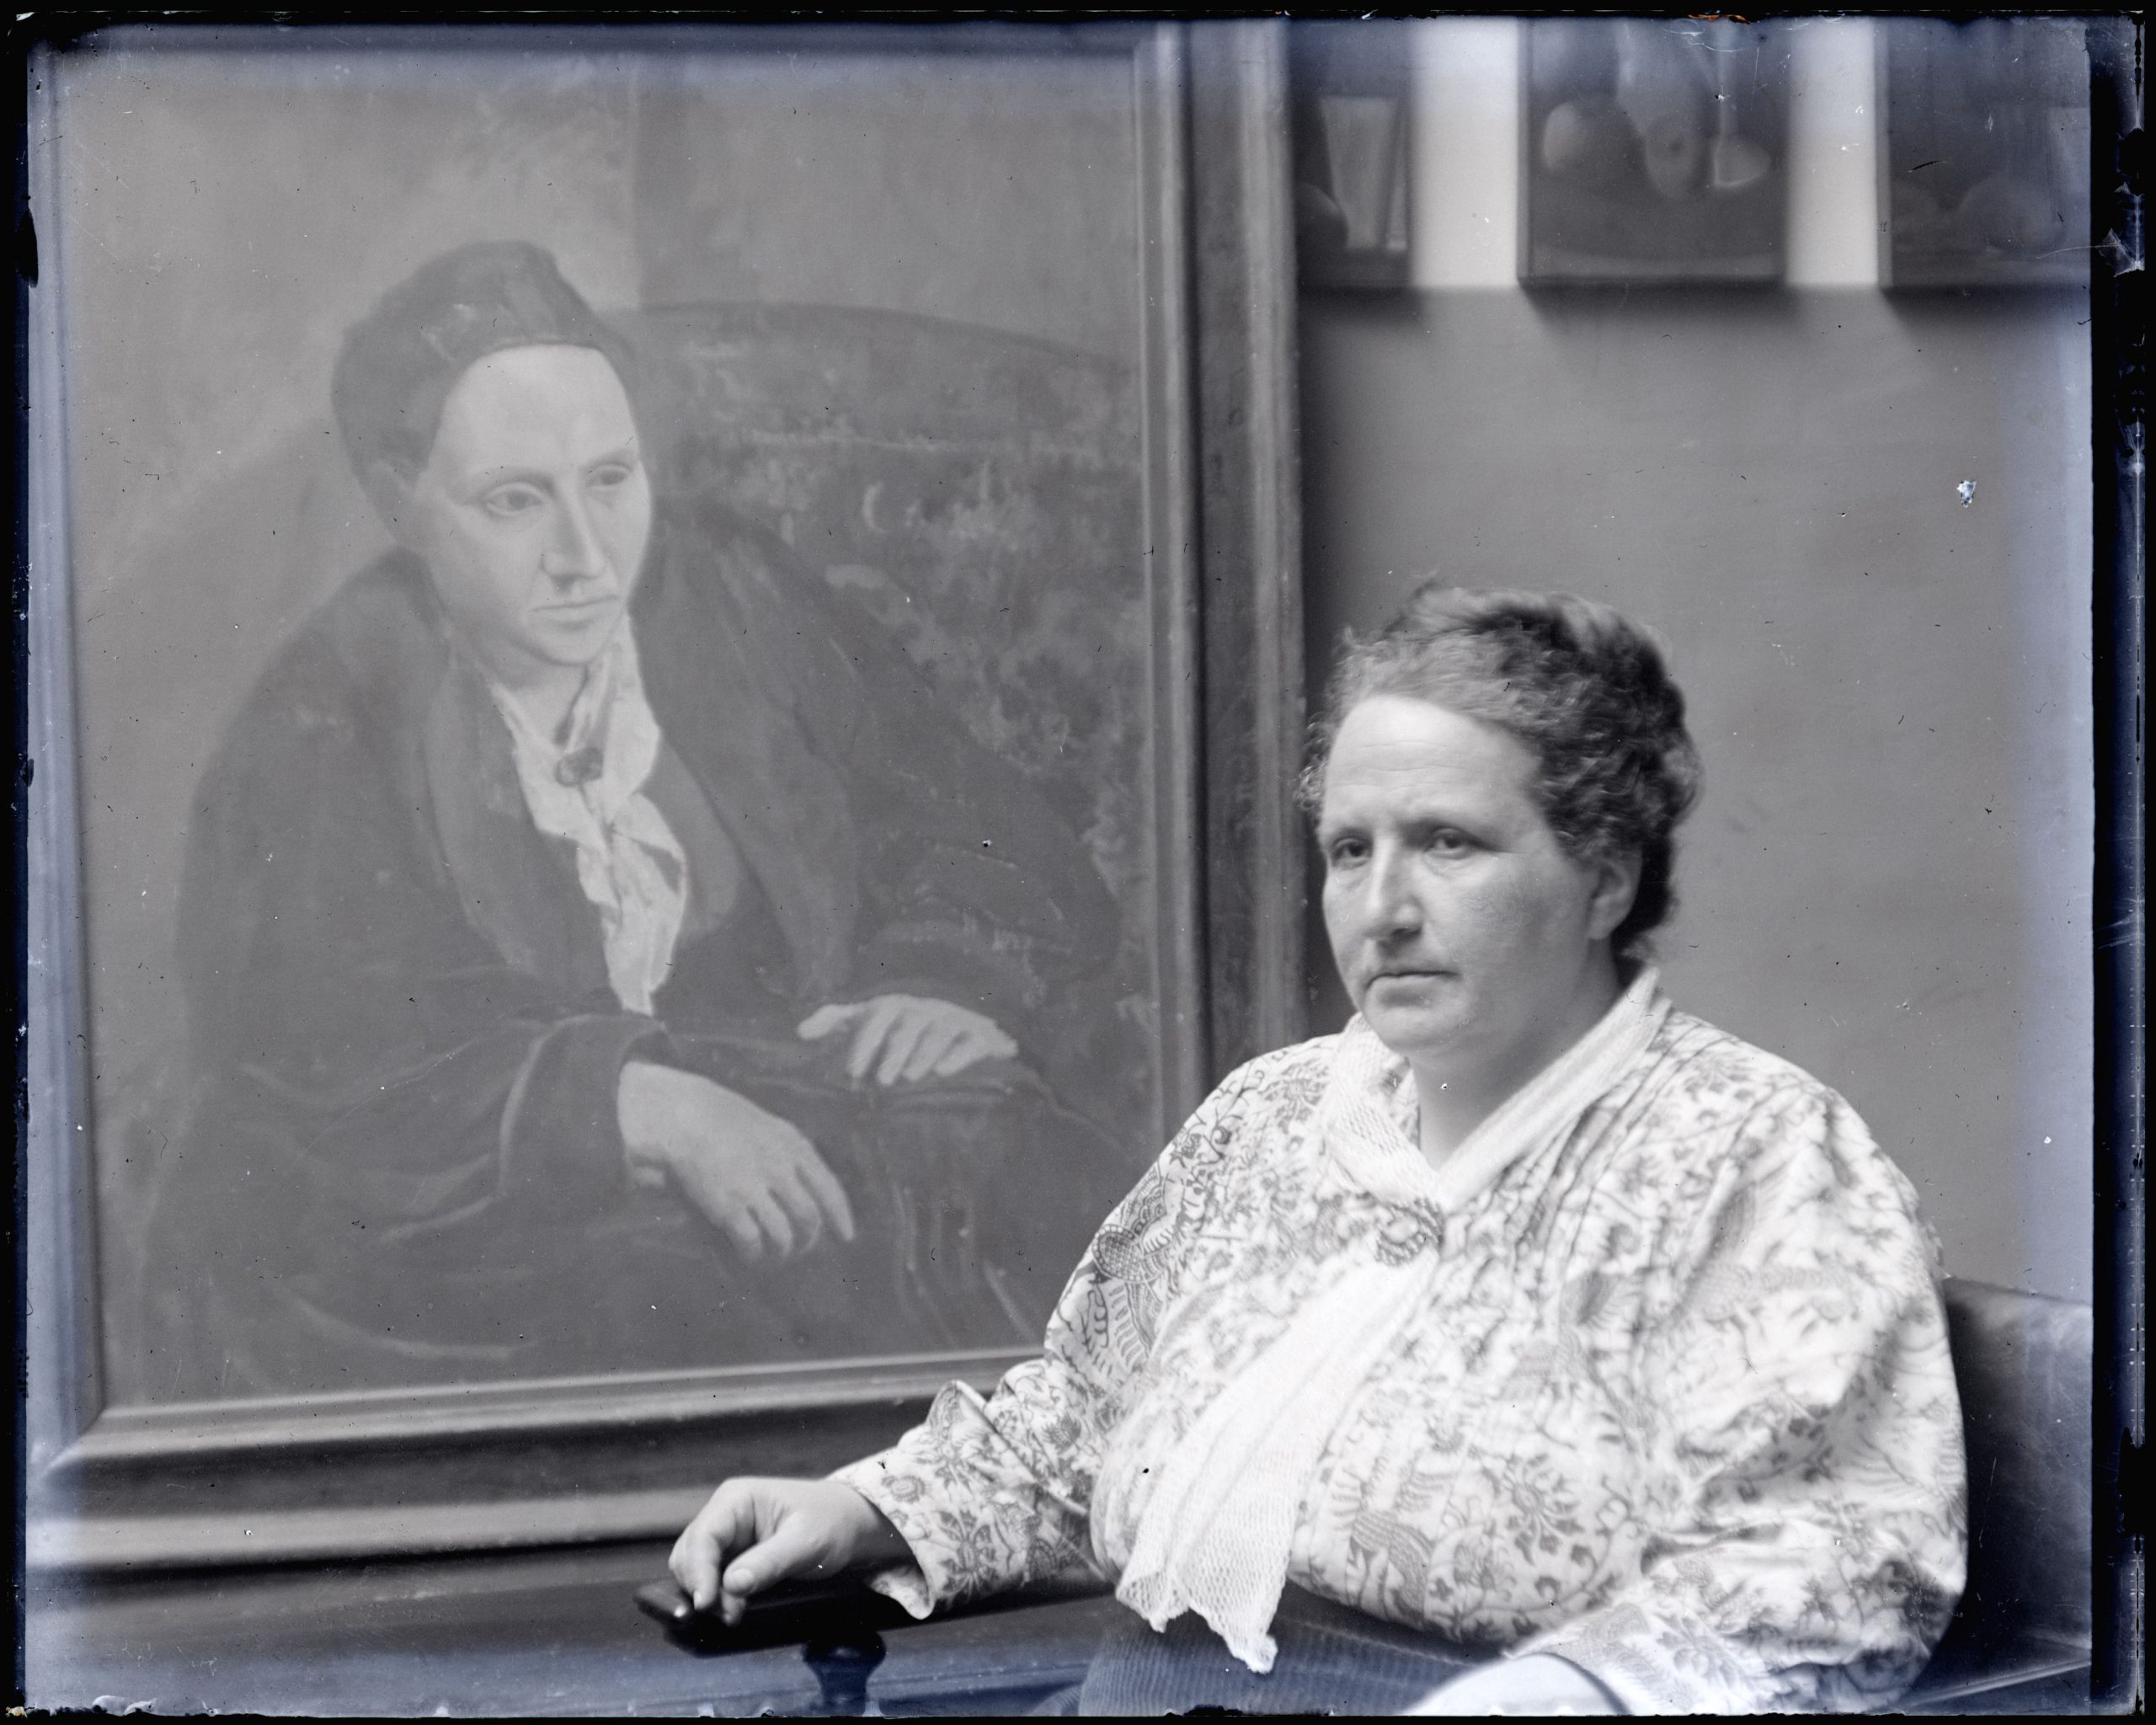 Gertrude Stein et Pablo Picasso, l’exposition trompeuse